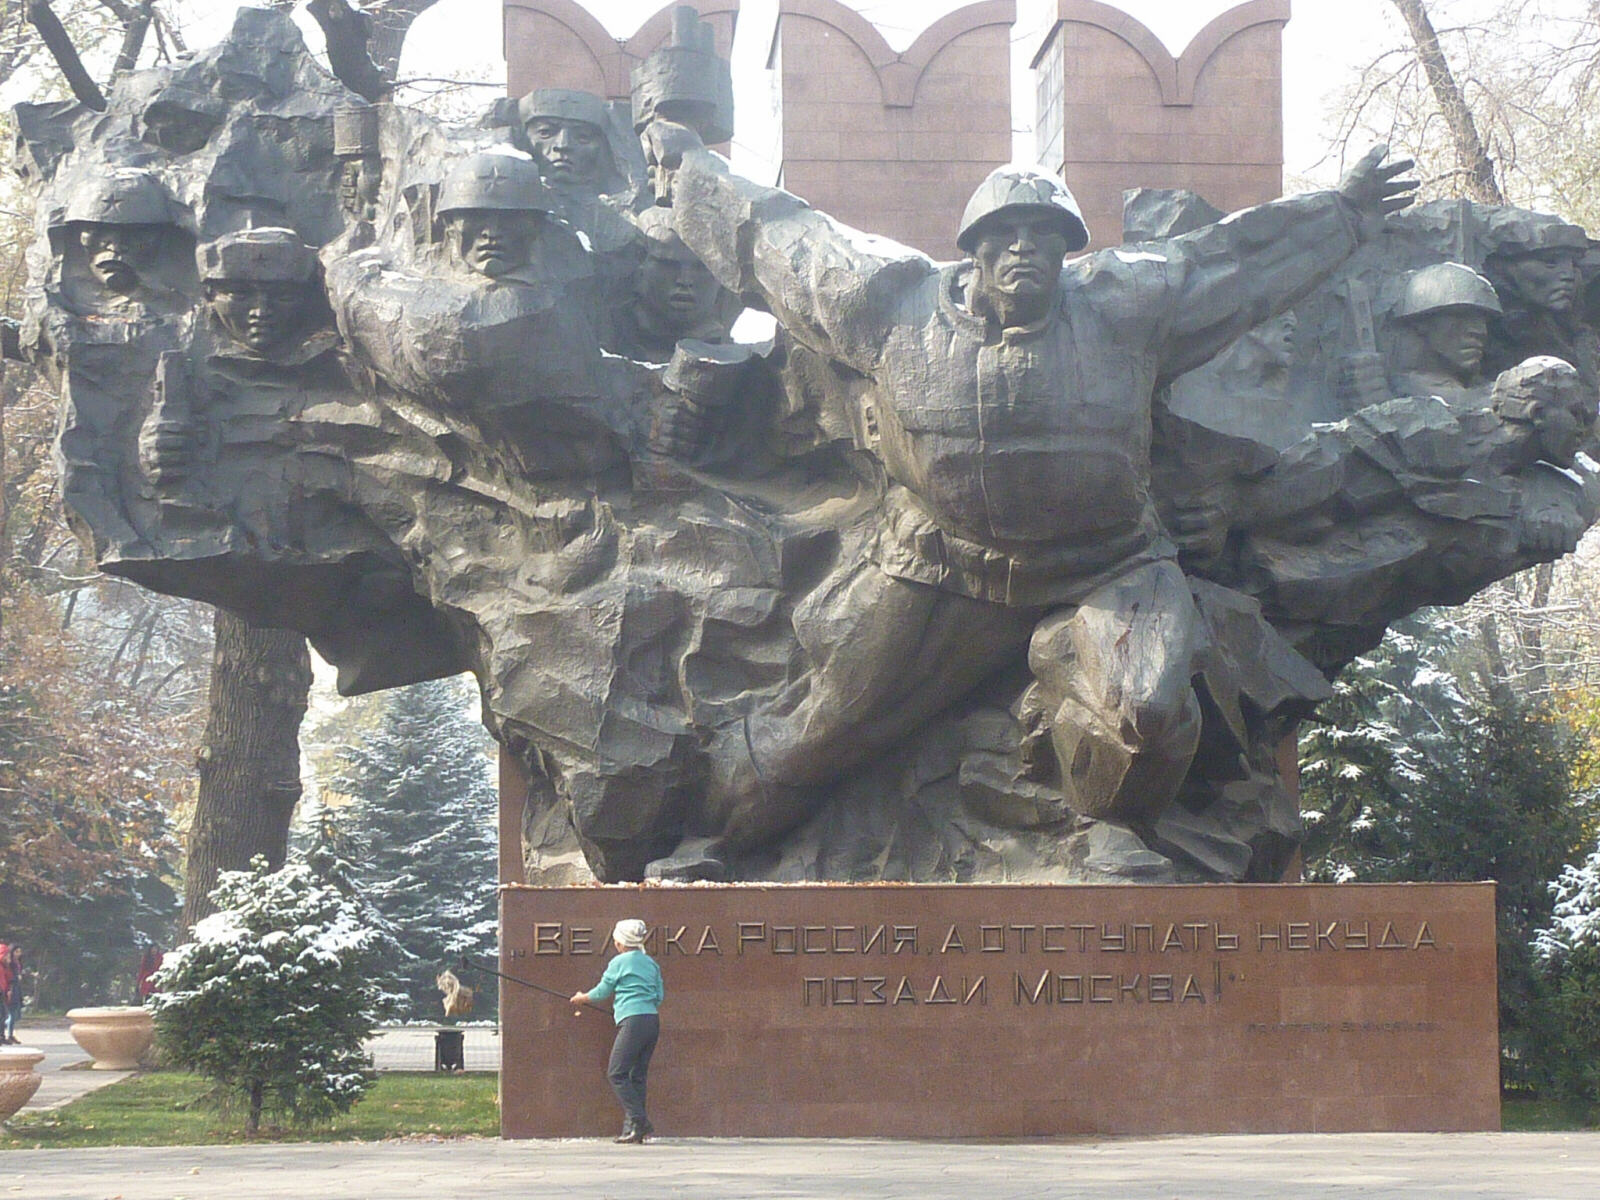 The war memorial in Panfilov Park, Almaty, Kazakhstan